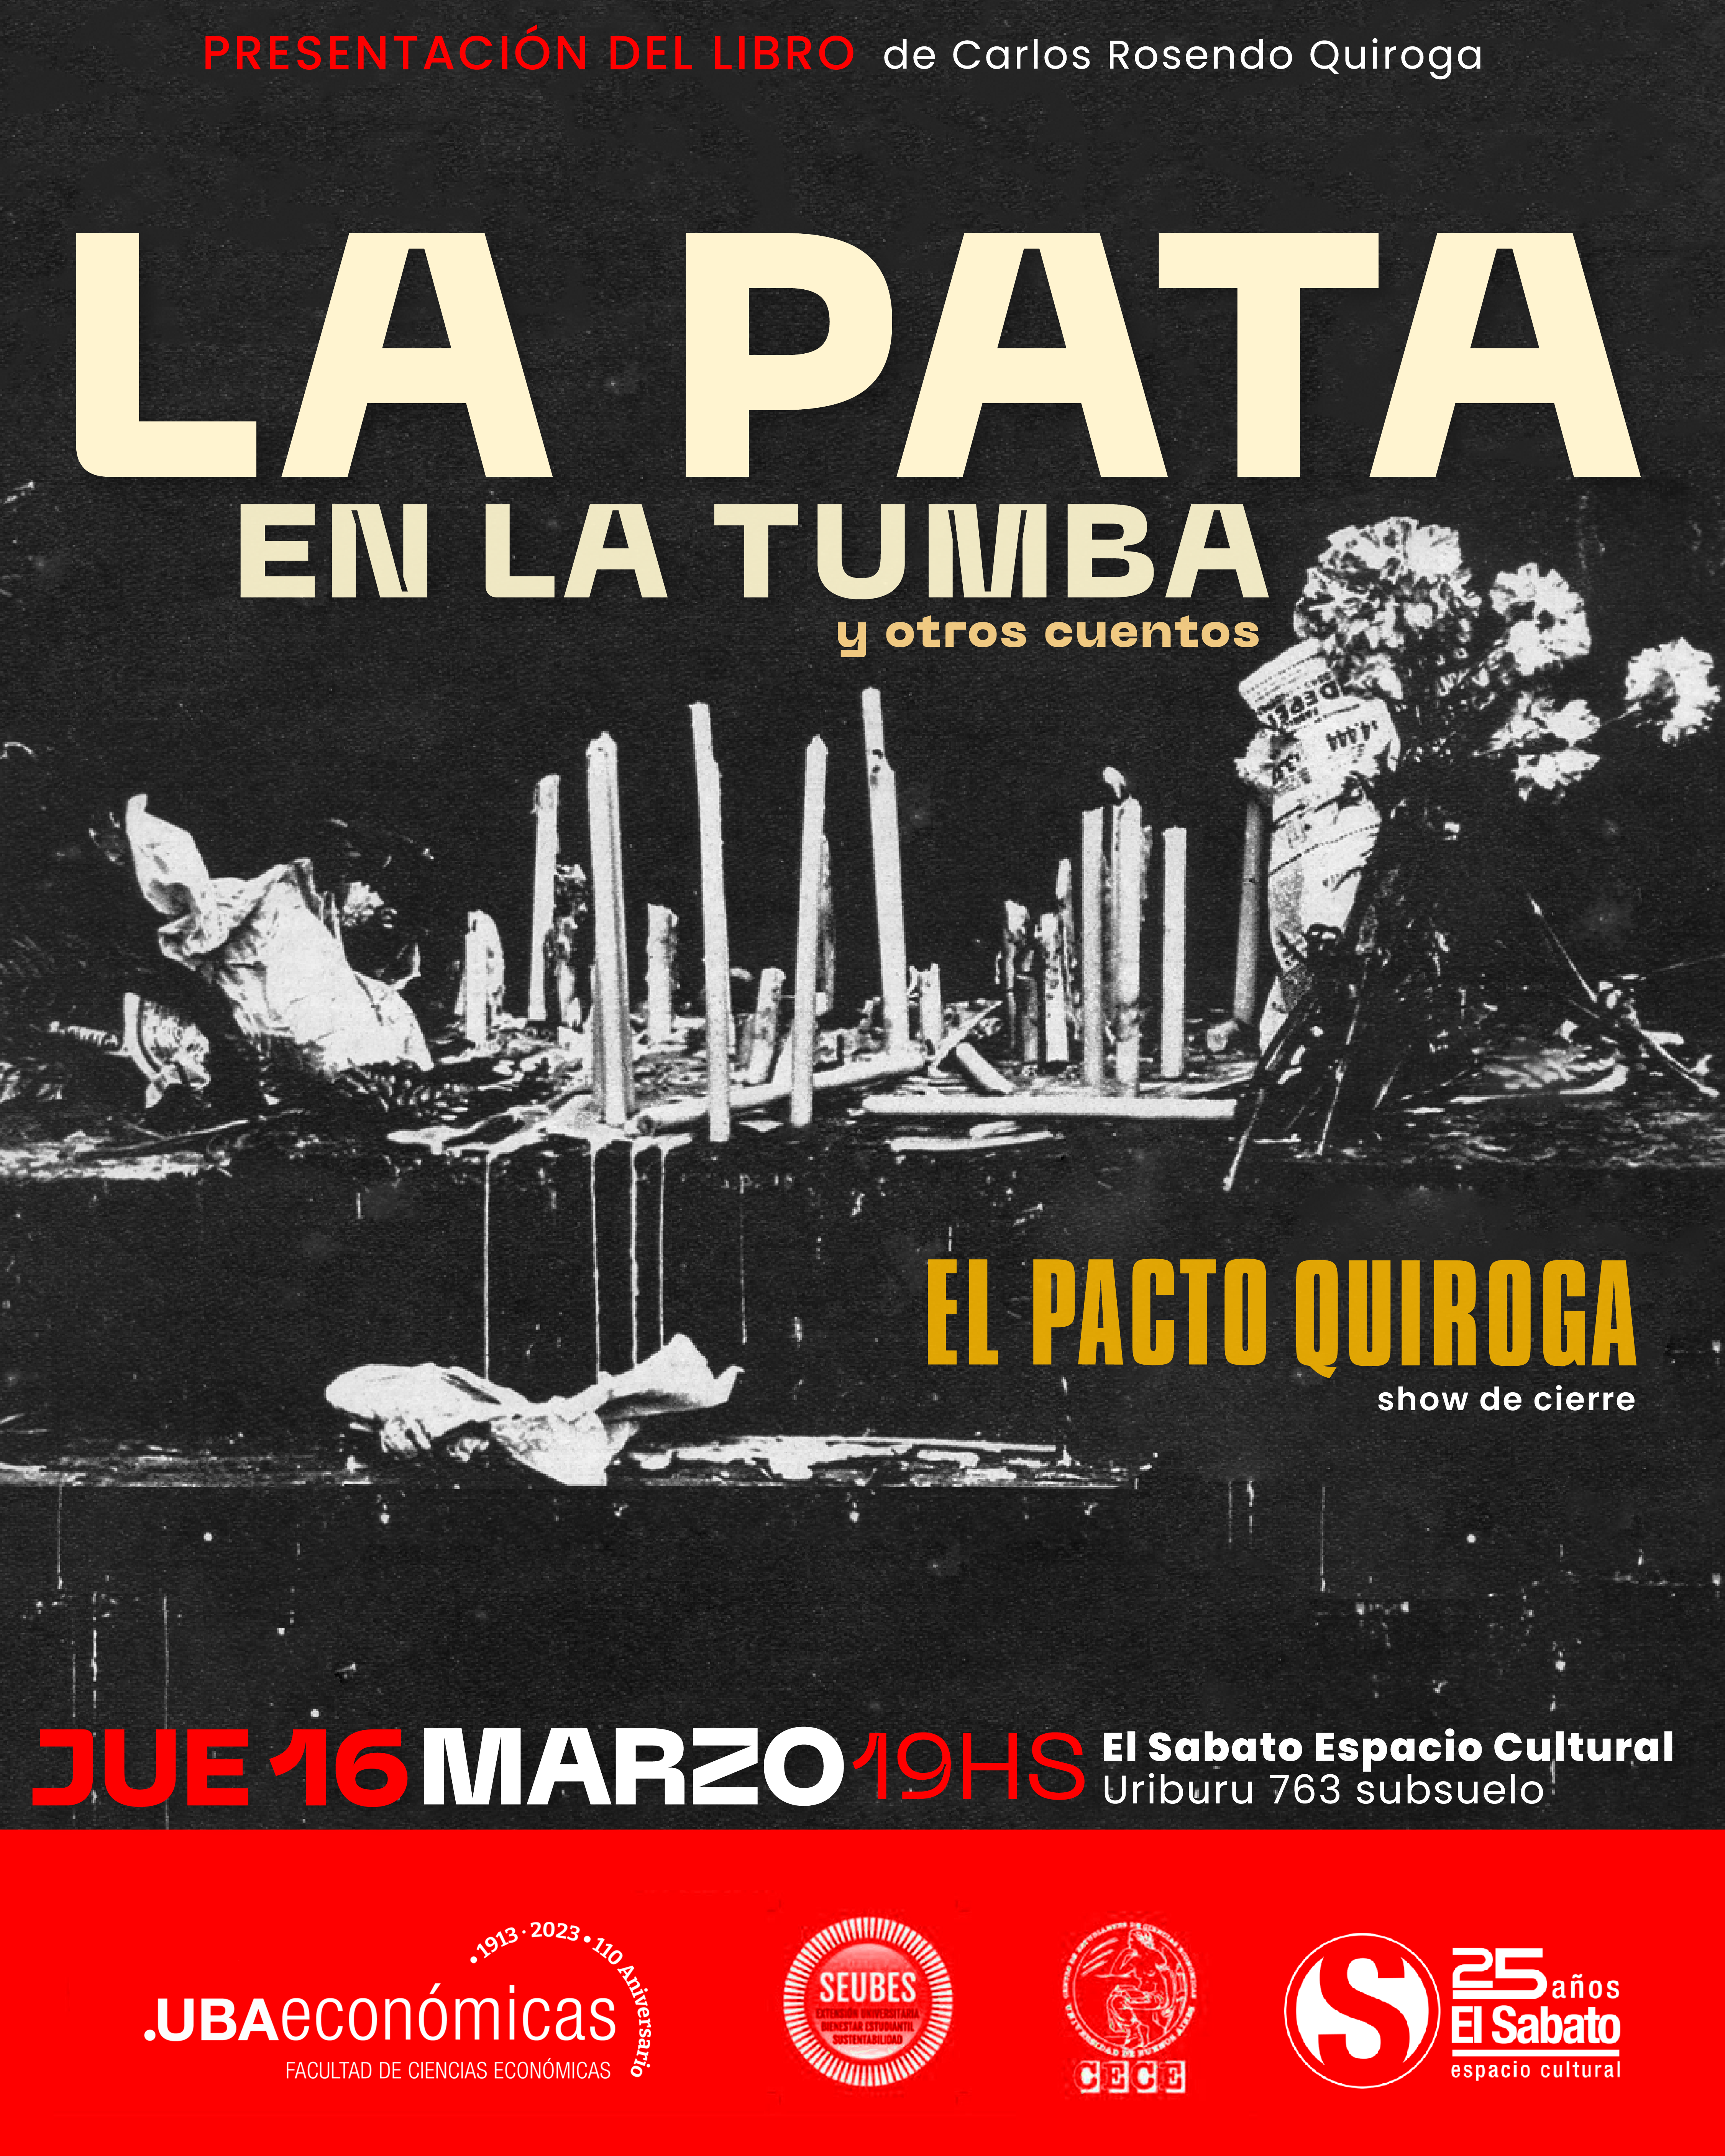 La pata en la tumba de Carlos Rosendo Quiroga y Show Musical de El Pacto Quiroga